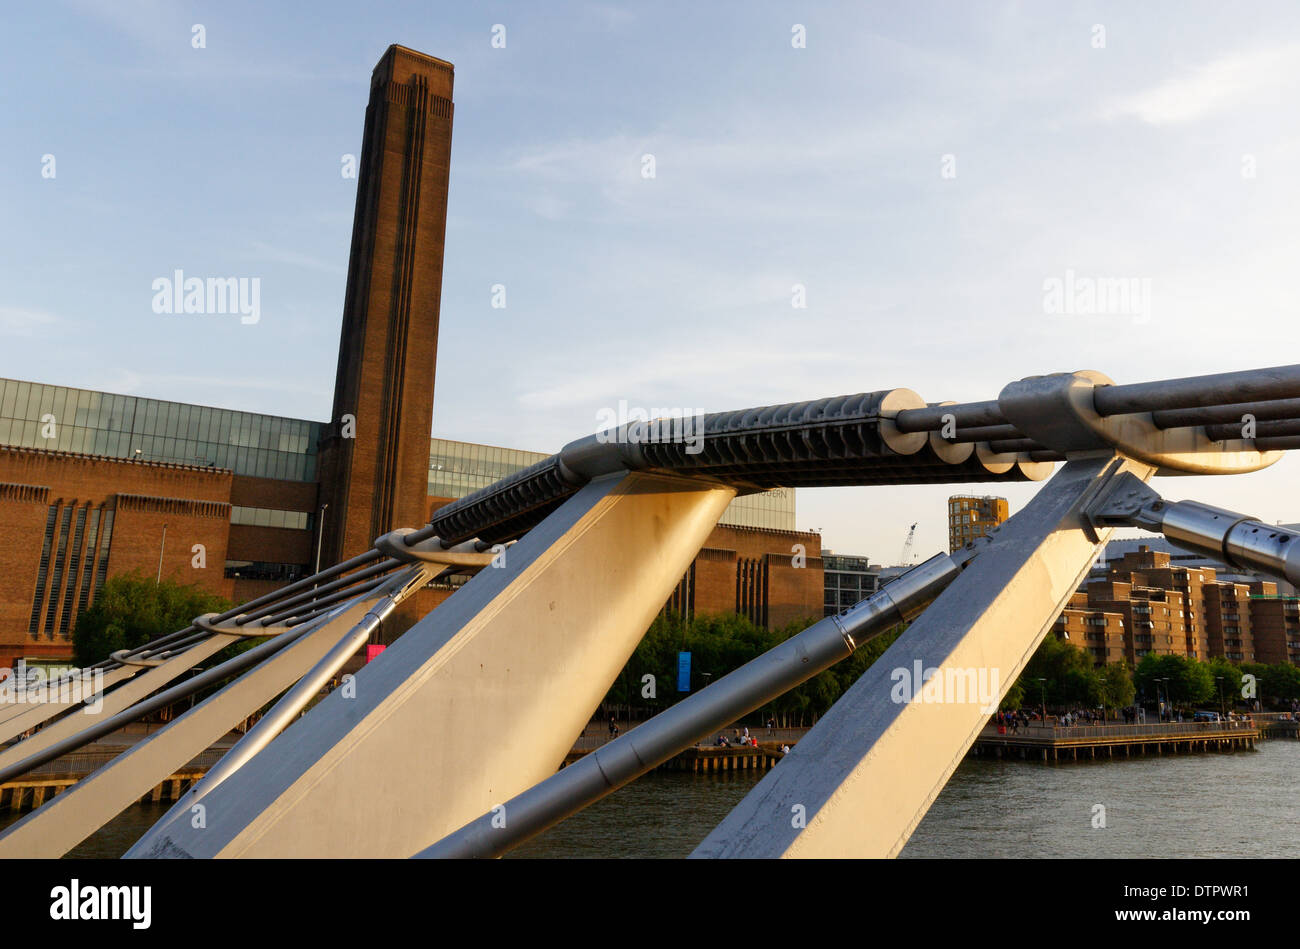 La Tate Modern et le Millennium Bridge, Londres Banque D'Images